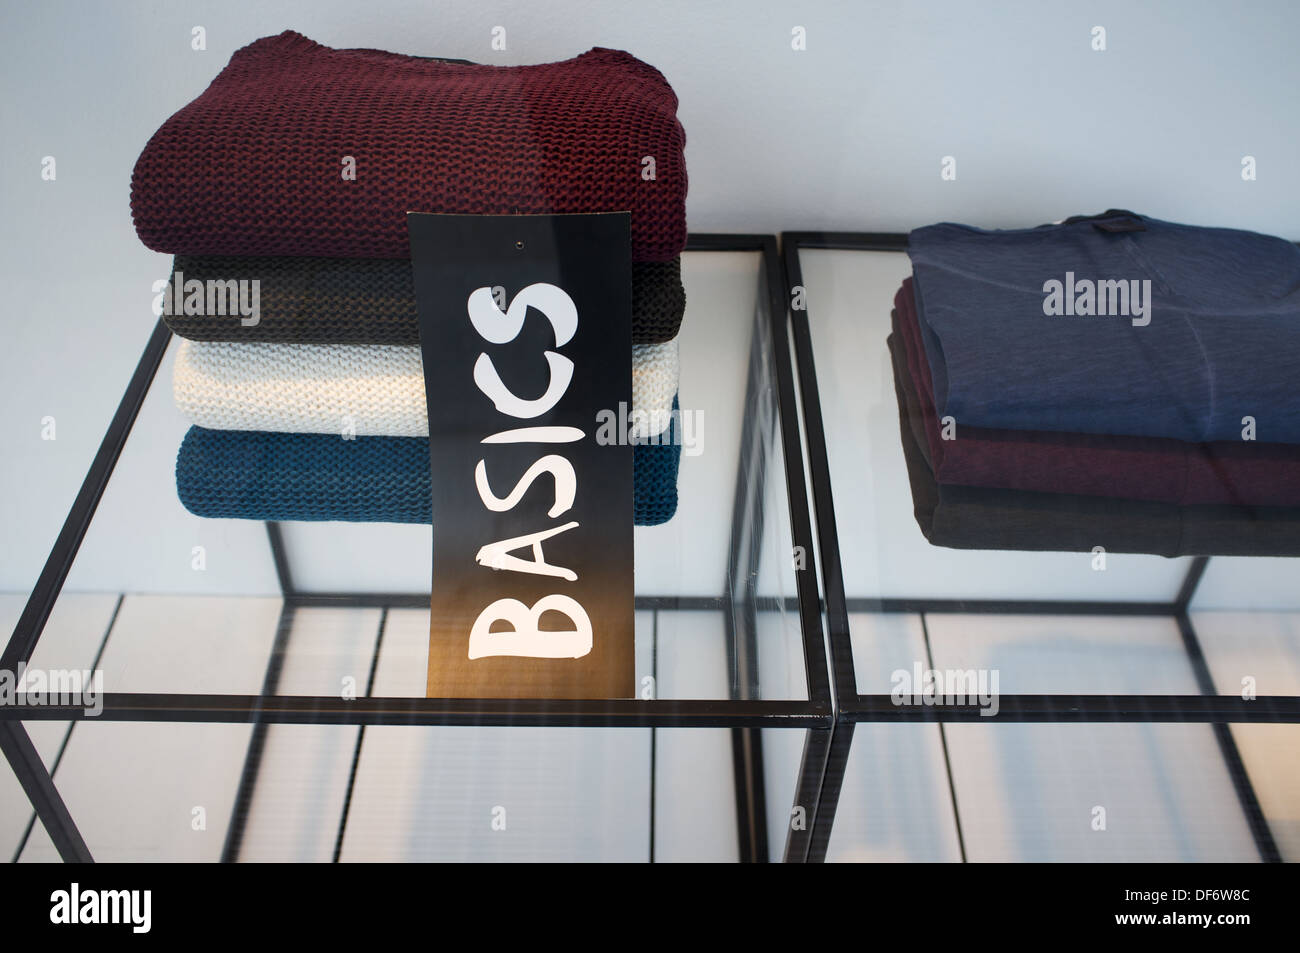 Basics clothing range Stock Photo